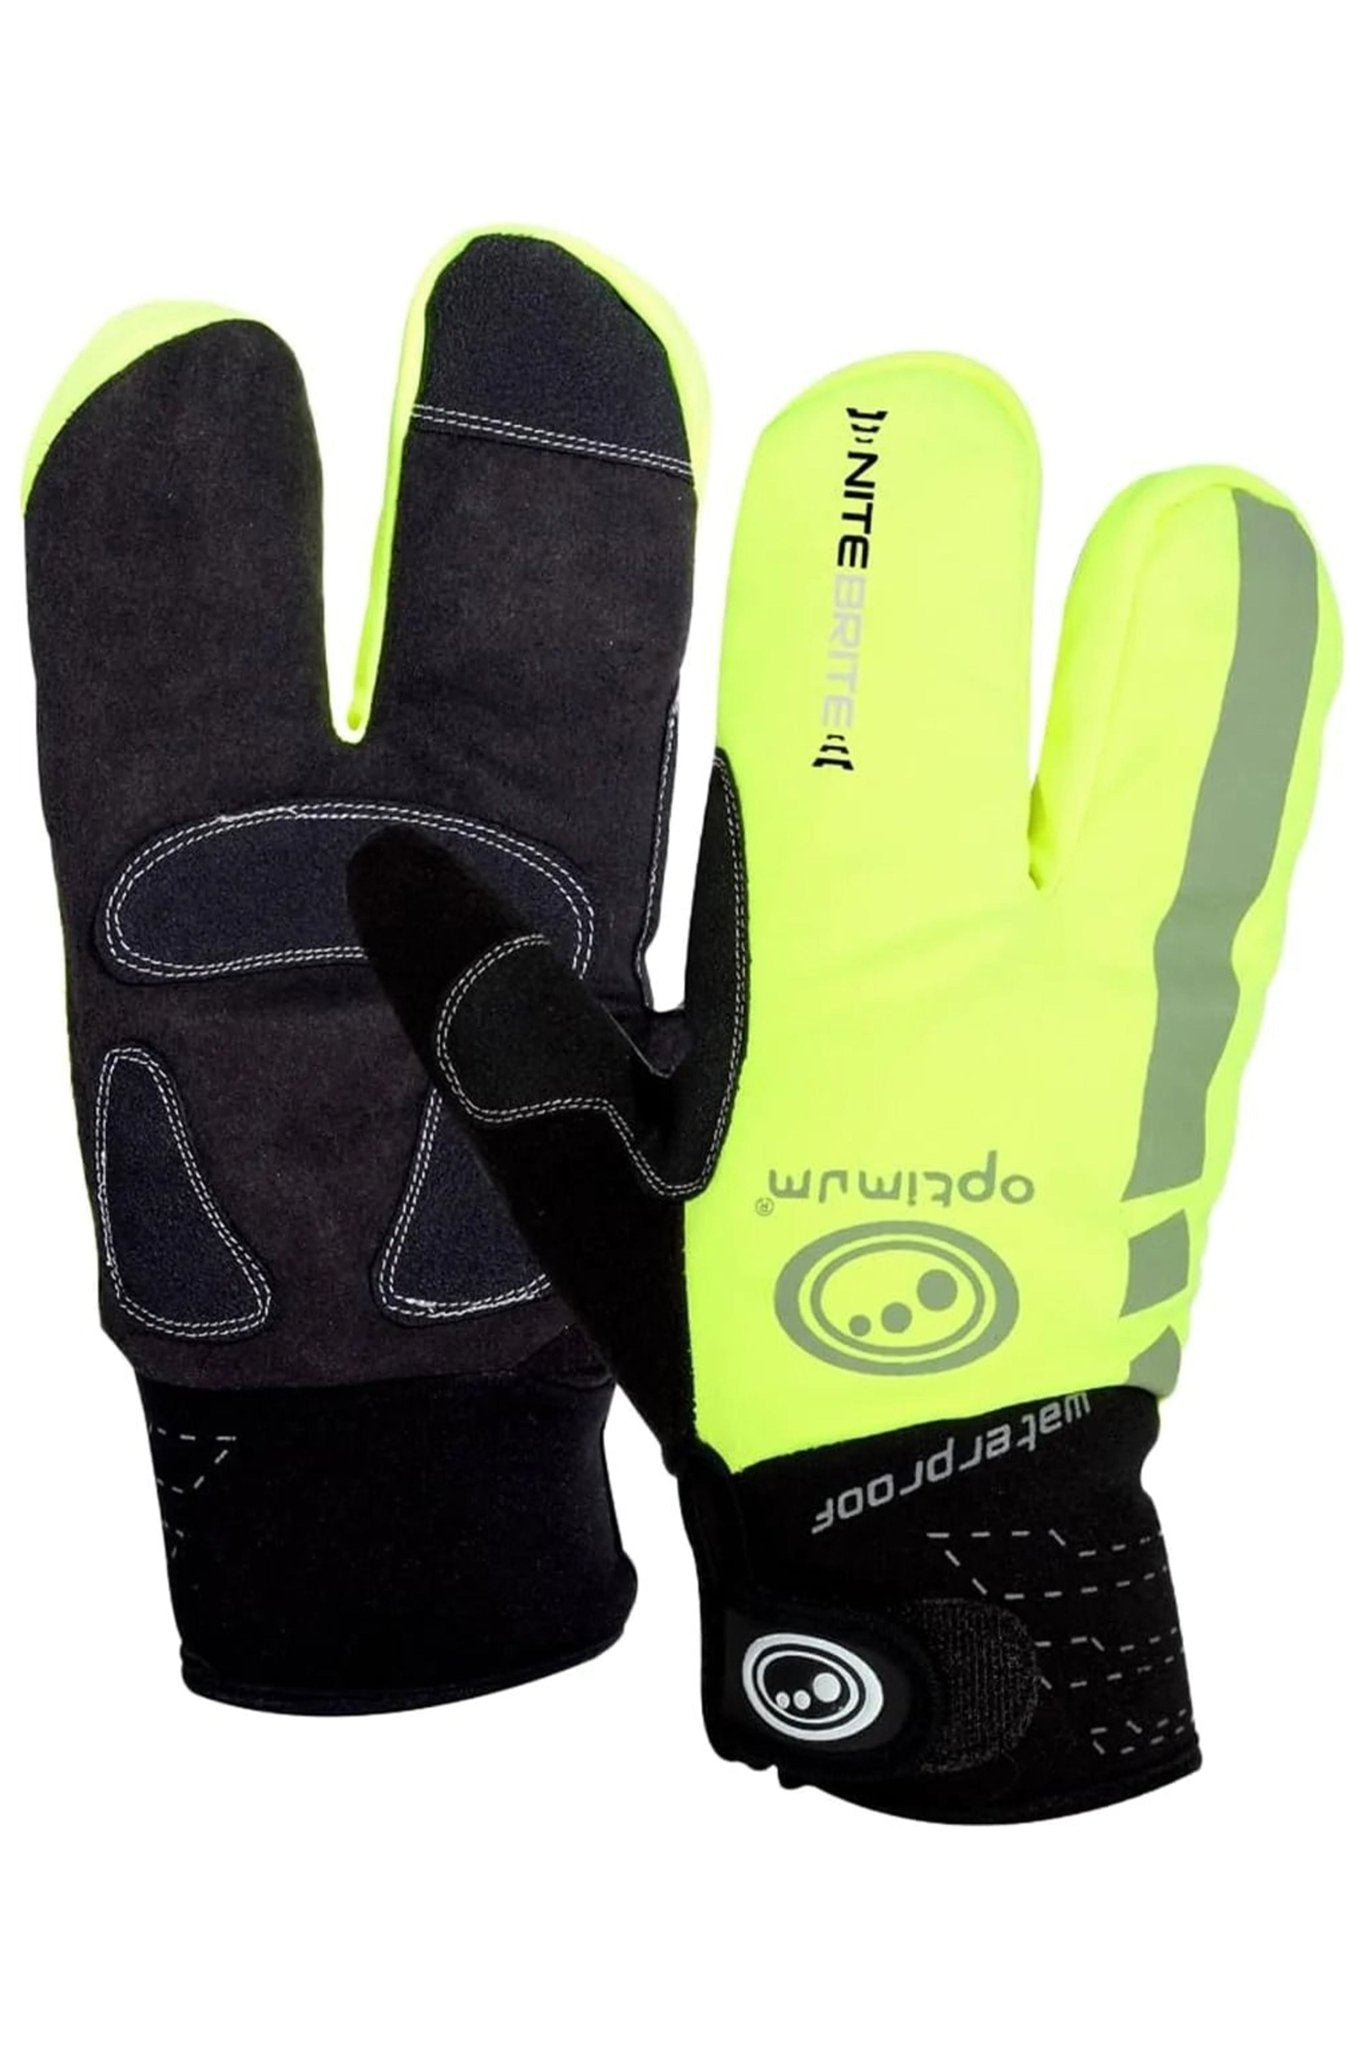 Nitebrite Cycling Lobster Gloves - Optimum